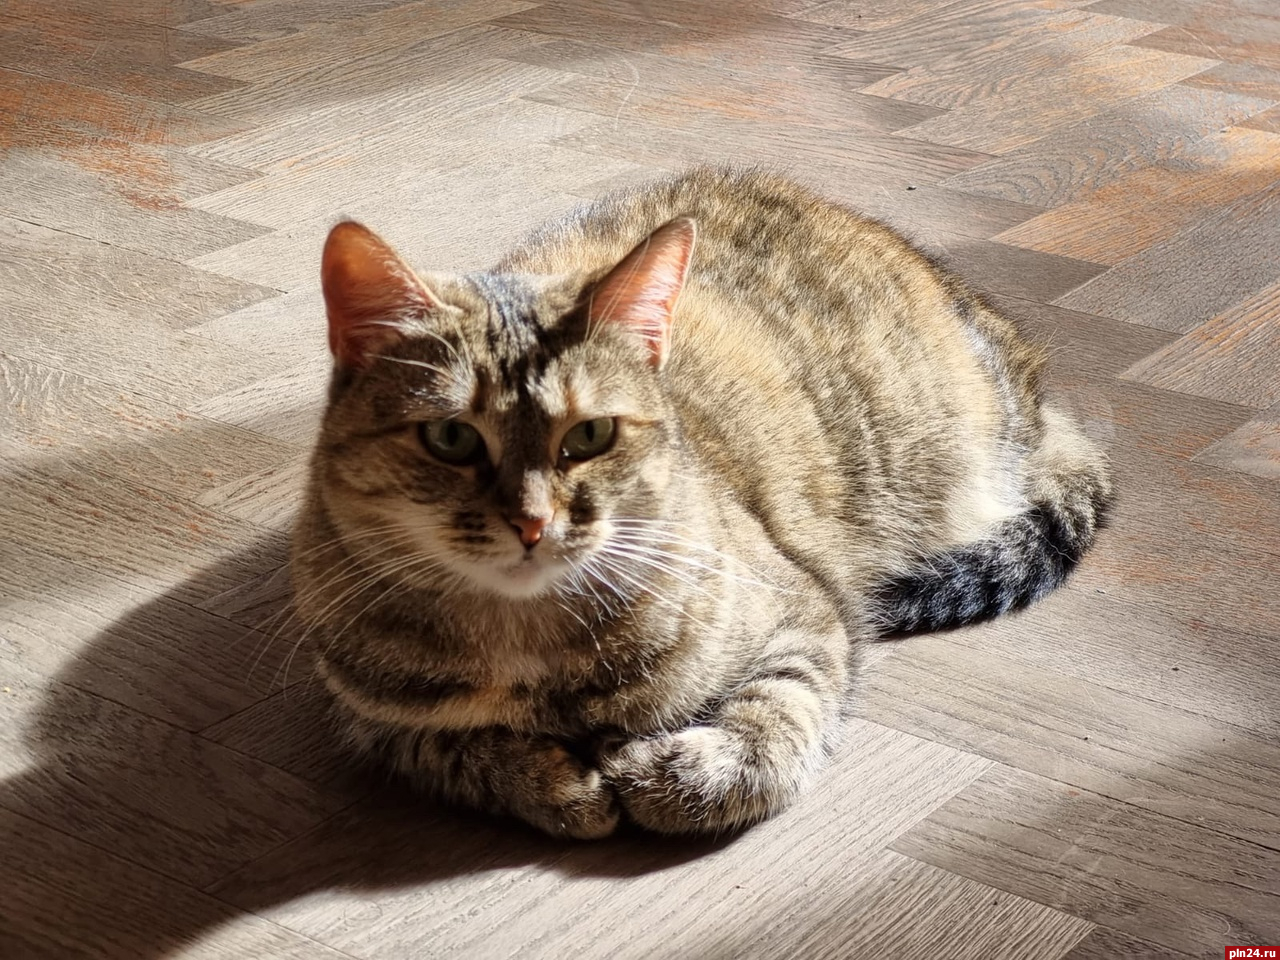 Пропавшую из Городского культурного центра в Пскове кошку Машу нашли